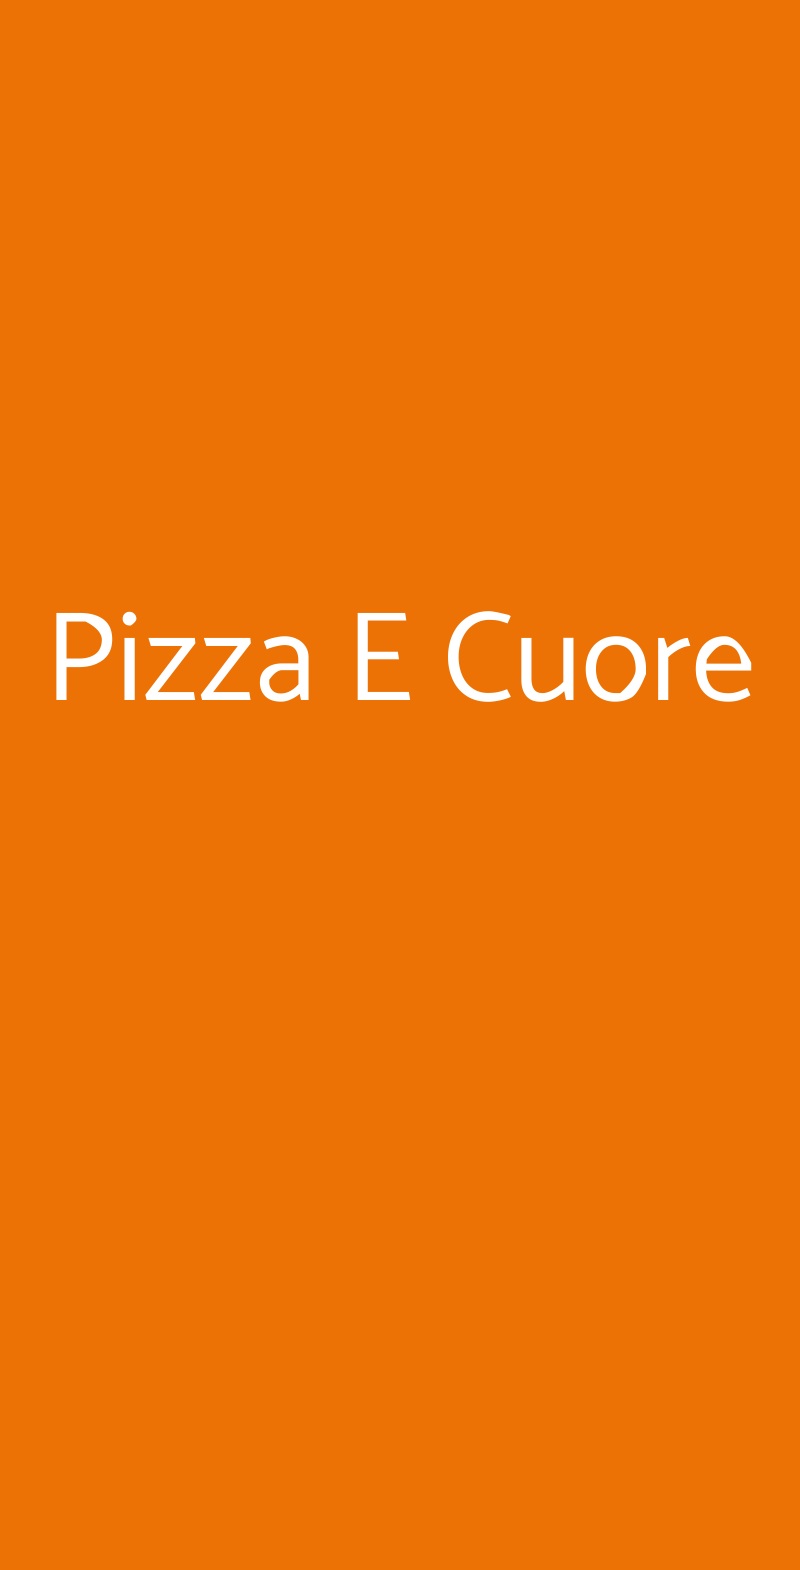 Pizza E Cuore Parma menù 1 pagina